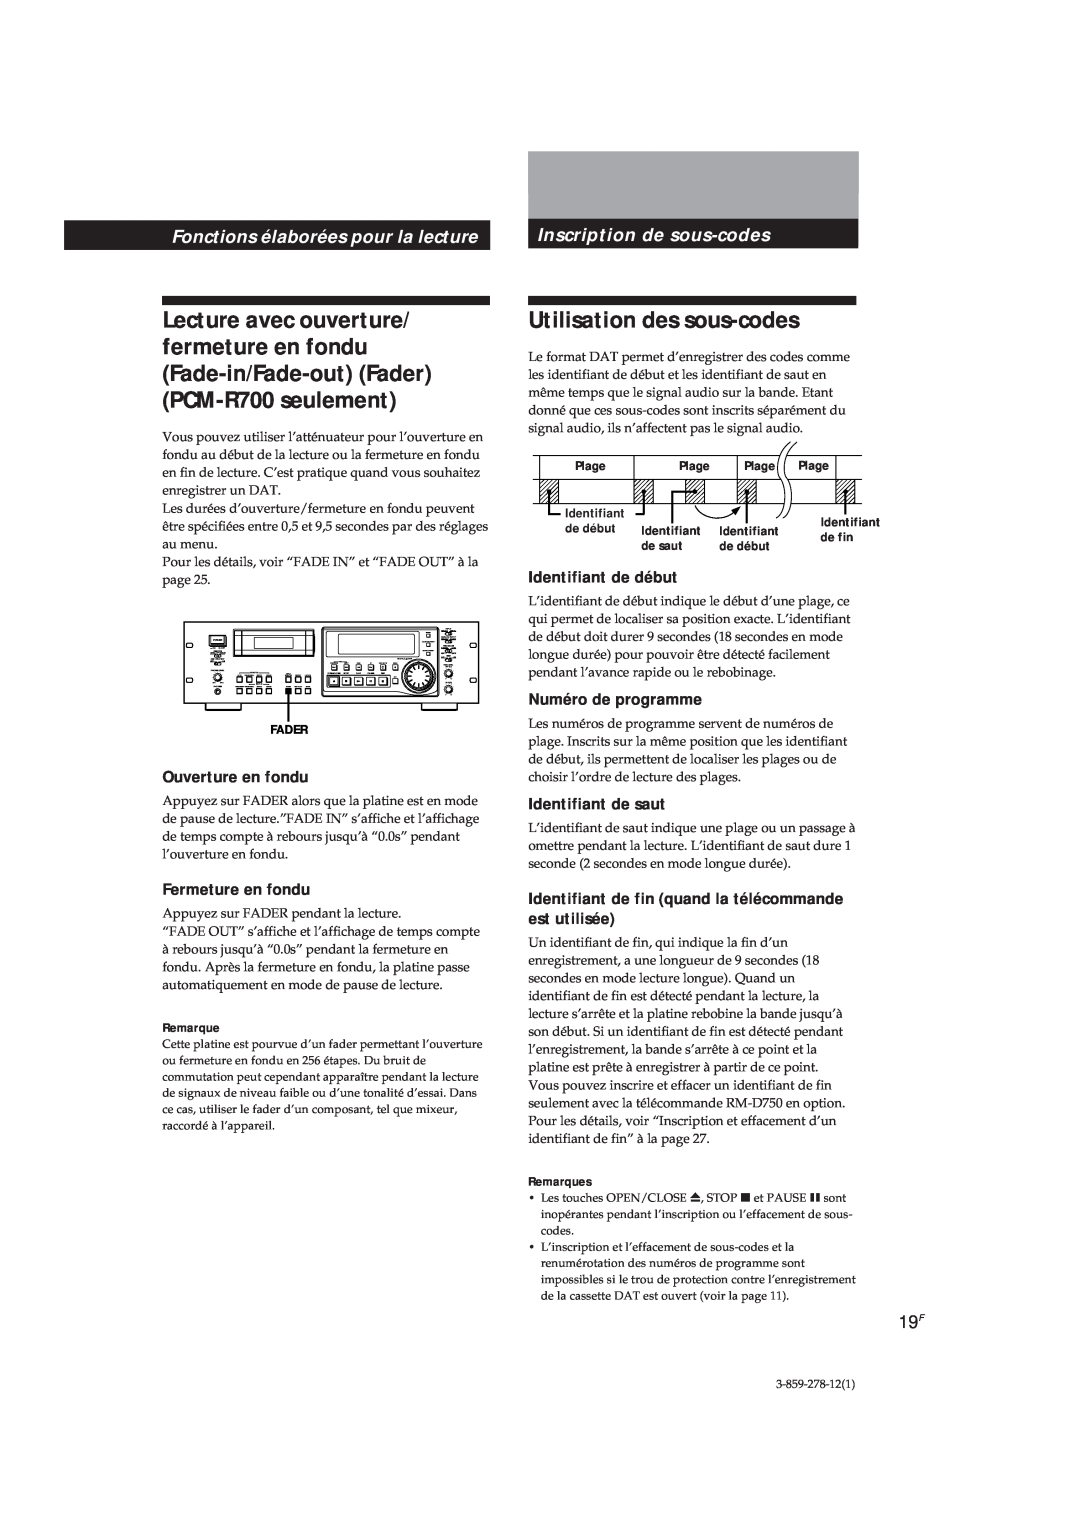 Sony PCM-R700 Utilisation des sous-codes, Fonctions élaborées pour la lecture, Ouverture en fondu, Fermeture en fondu 